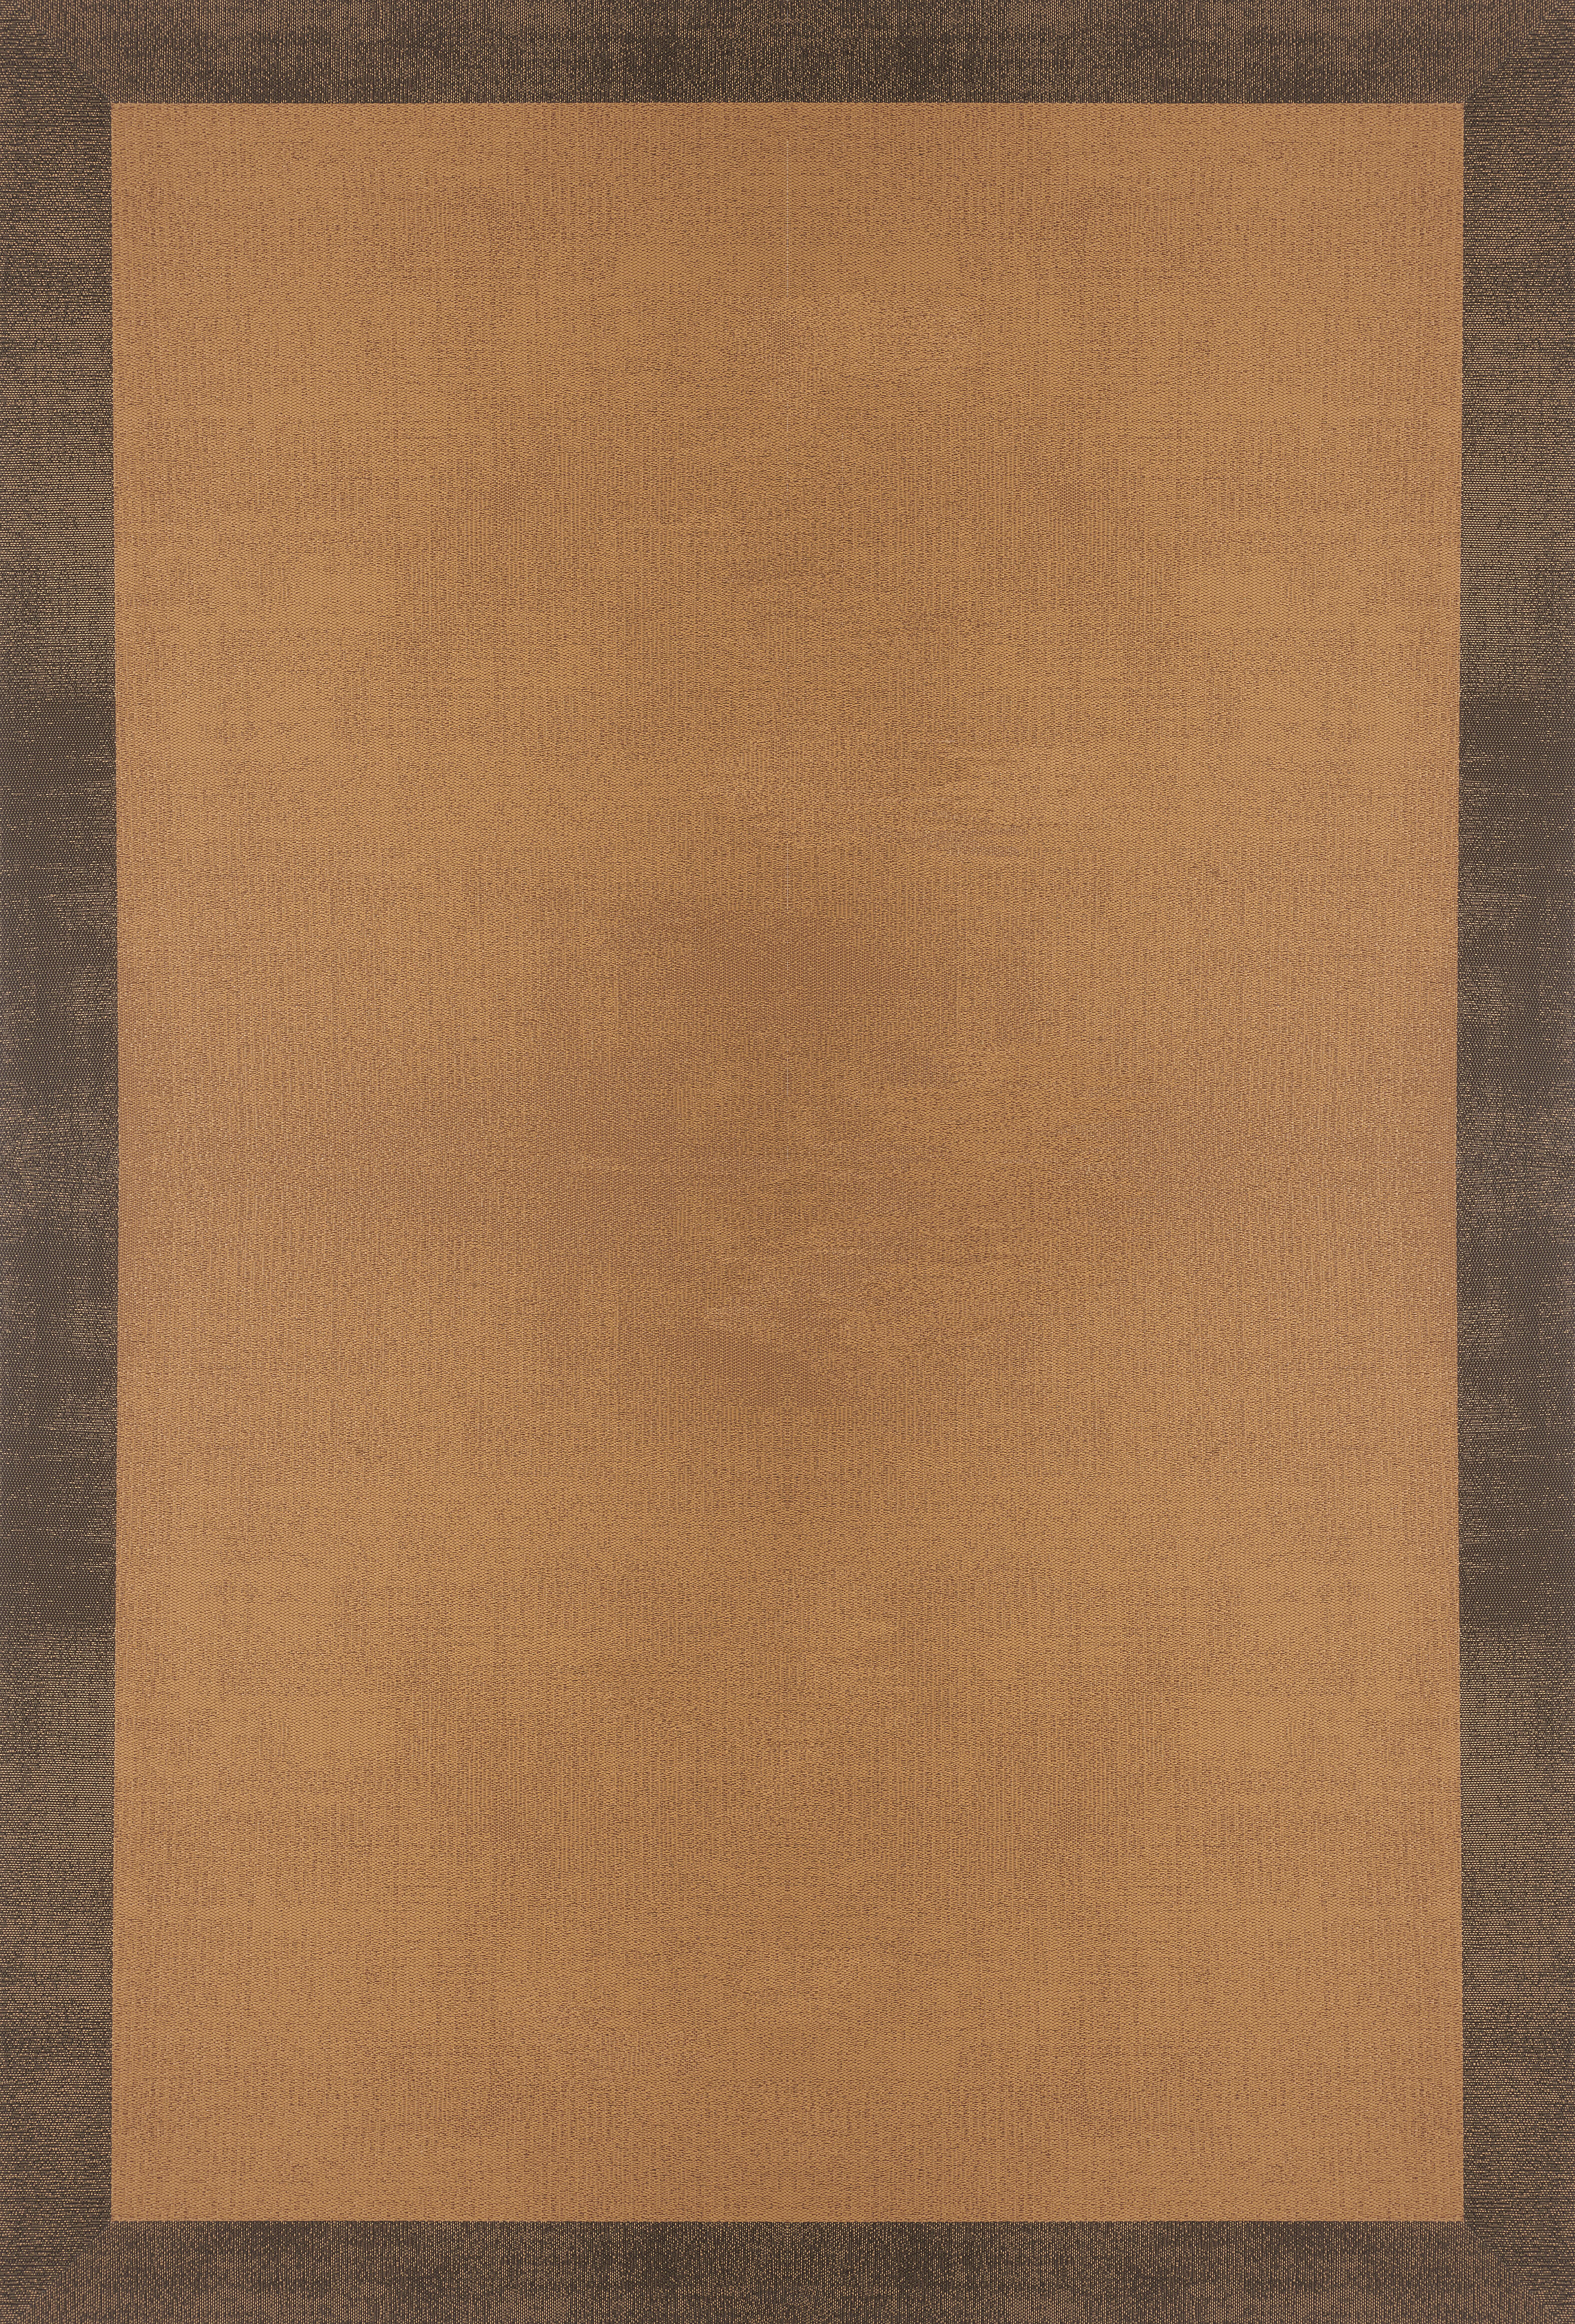 Alfombra exterior/interior pvc teplon shadow marrón naranja / cobre 140x200cm